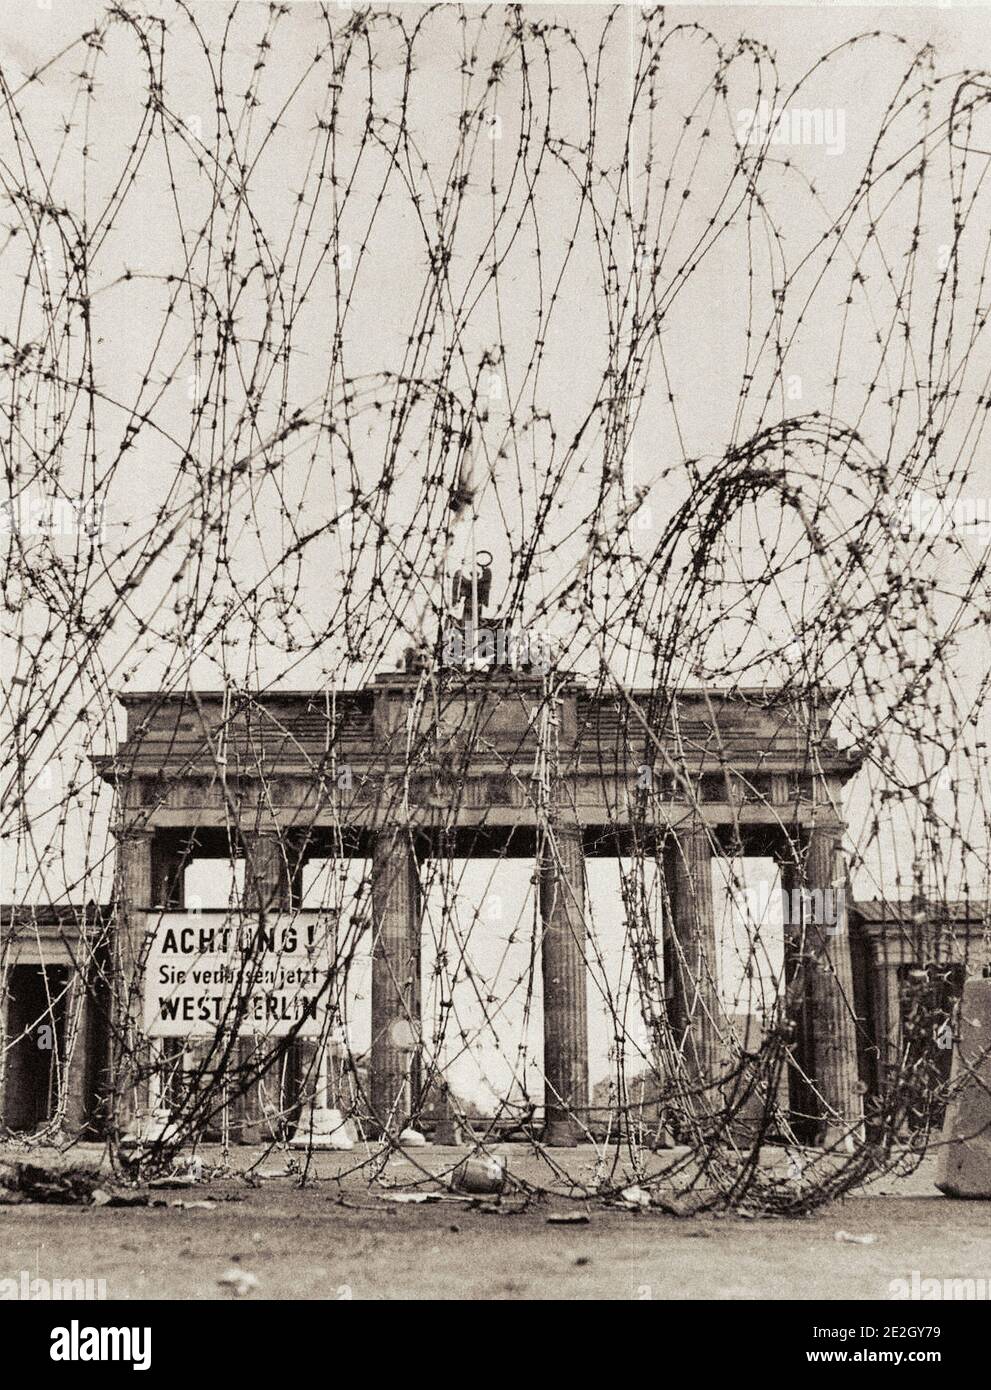 Vintage-Foto der Berliner Mauer im Jahr 1961. Brandenburger Tor Durch Barbedwire Barriere Von Der Ost-Berliner Polizei Errichtet Gesehen. West-Berlin. Oktober 1961 Stockfoto